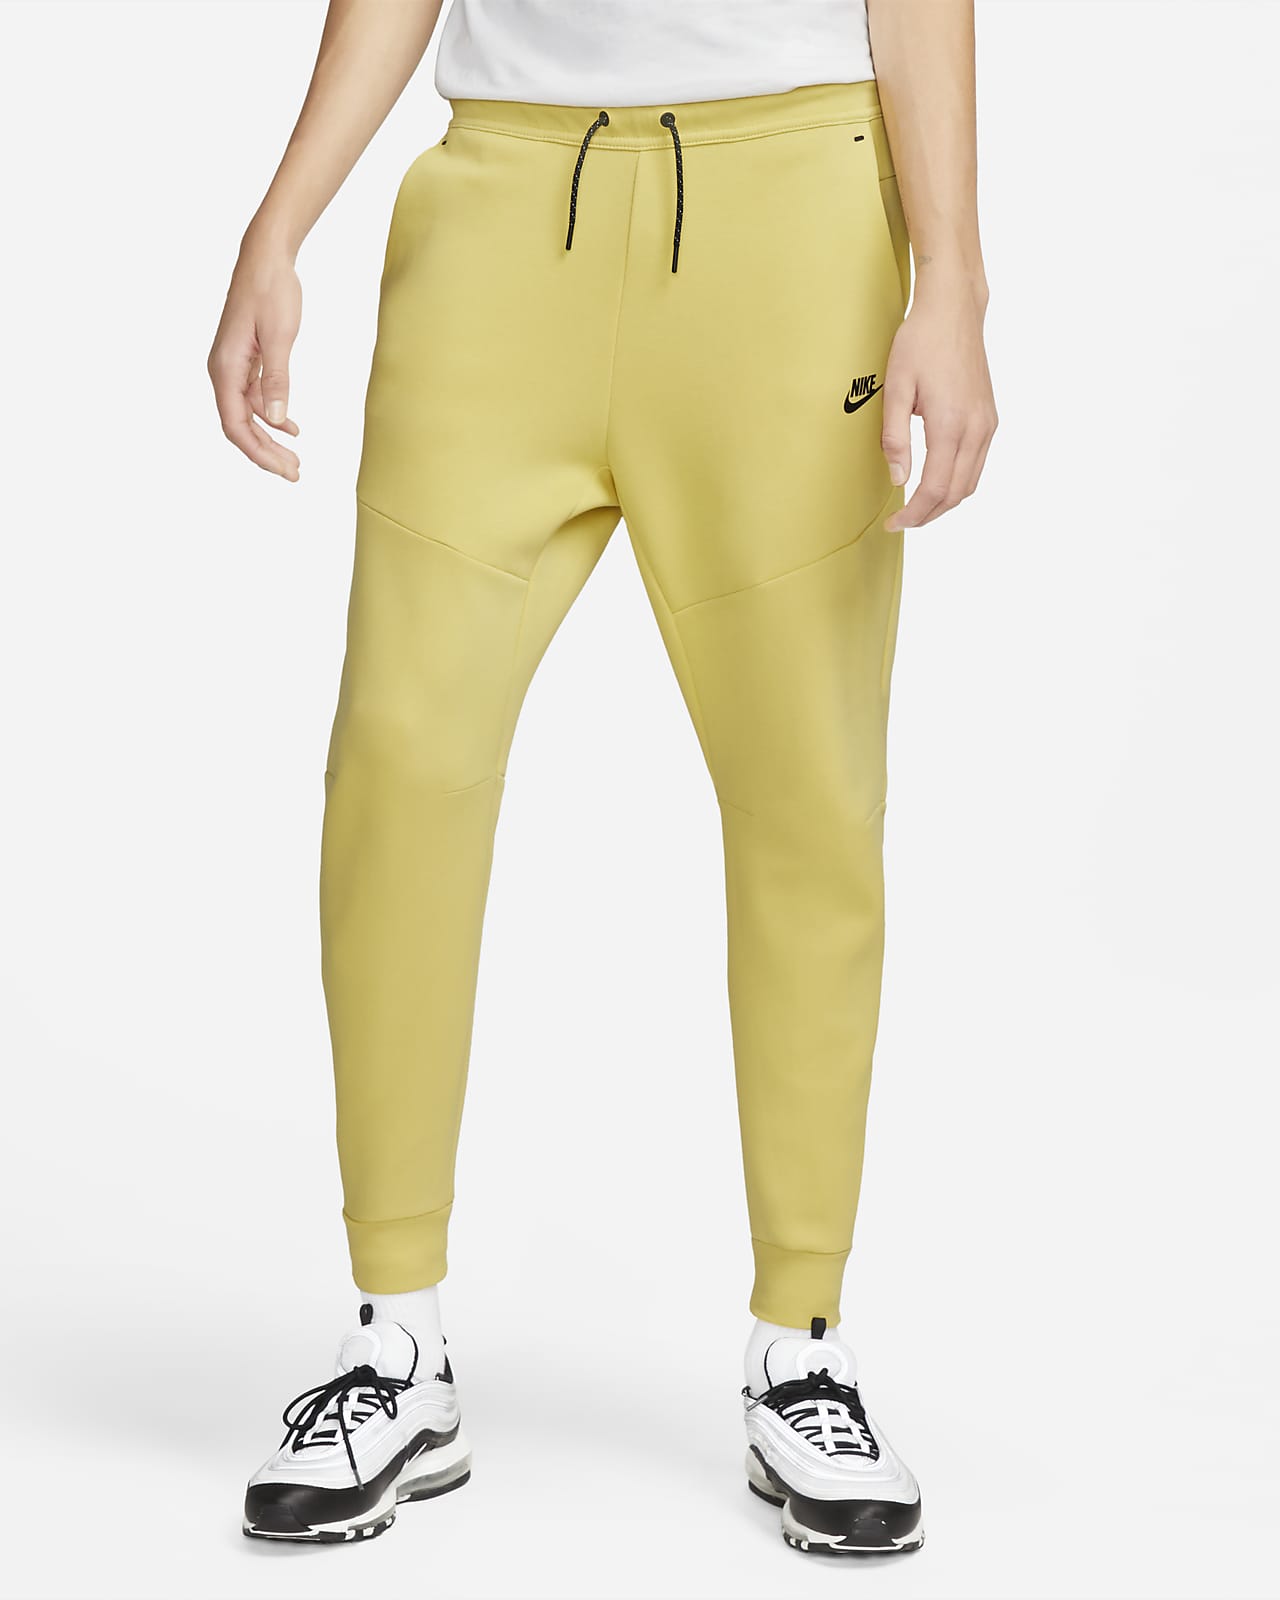 vertel het me adopteren Woning Nike Sportswear Tech Fleece Joggingbroek voor heren. Nike NL